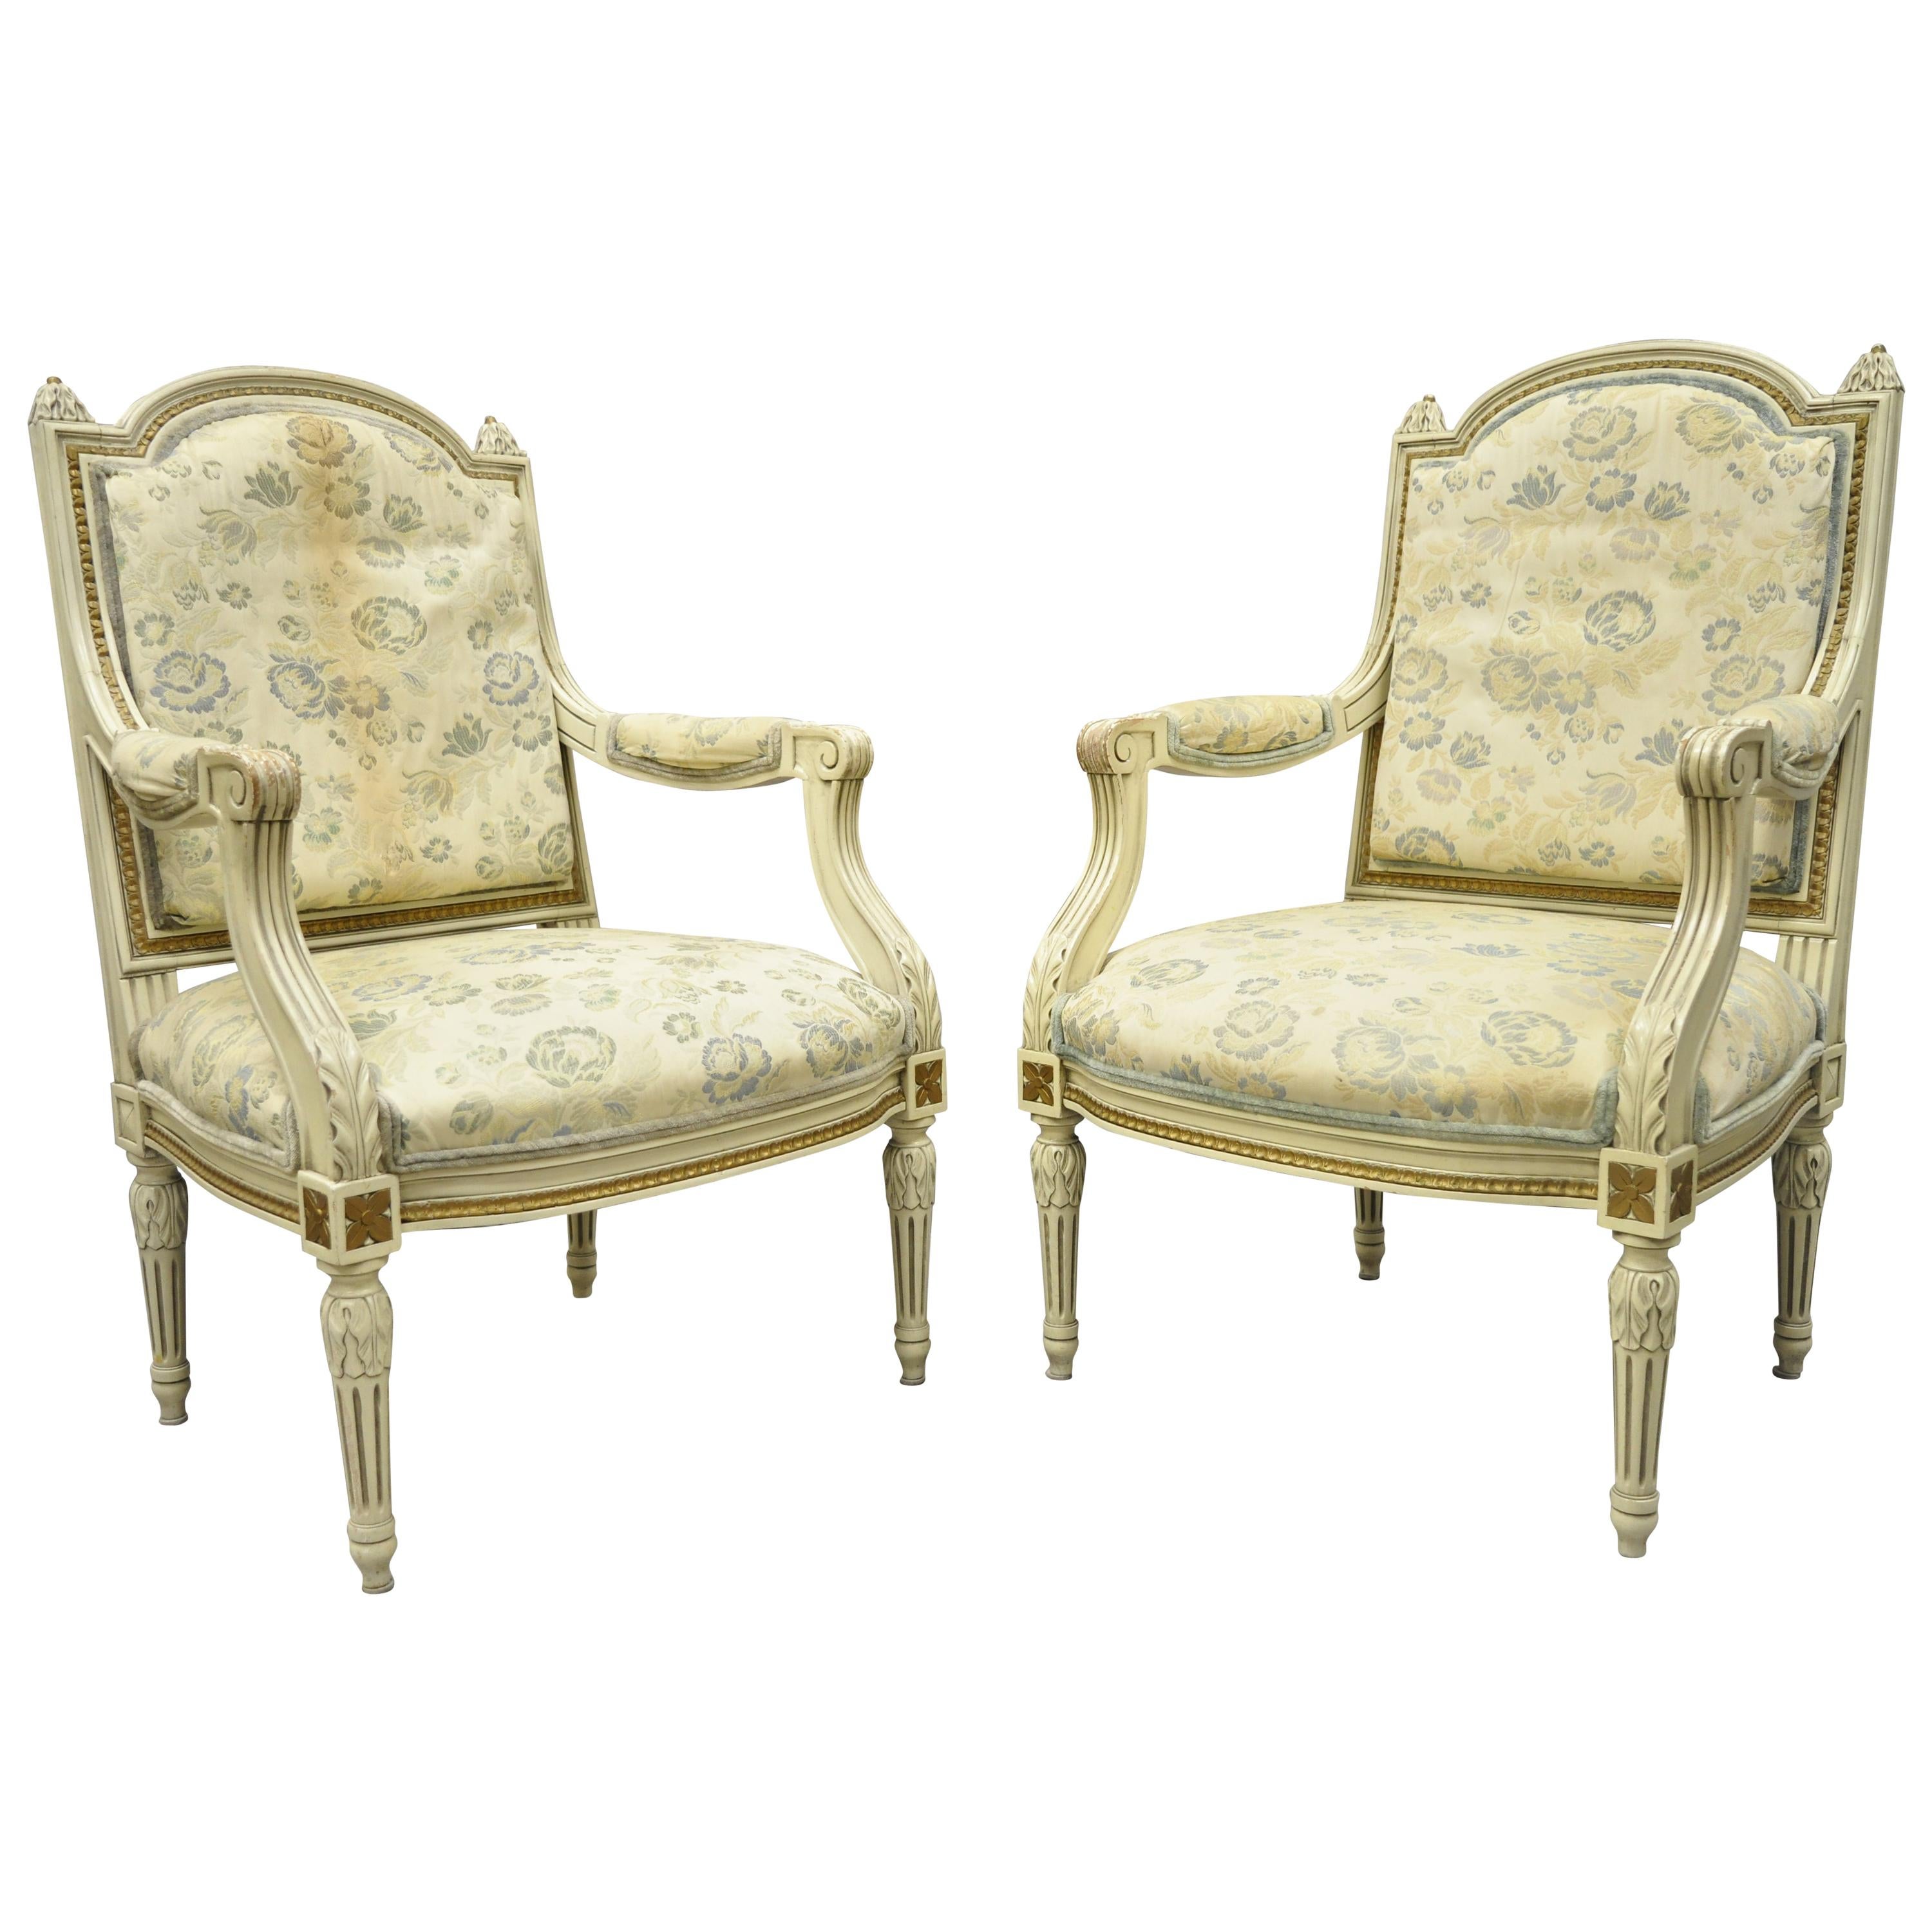 Vintage-Fauteuil-Sessel im französischen Louis-XVI-Stil, cremefarben lackiert, im Louis-XVI-Stil, ein Paar